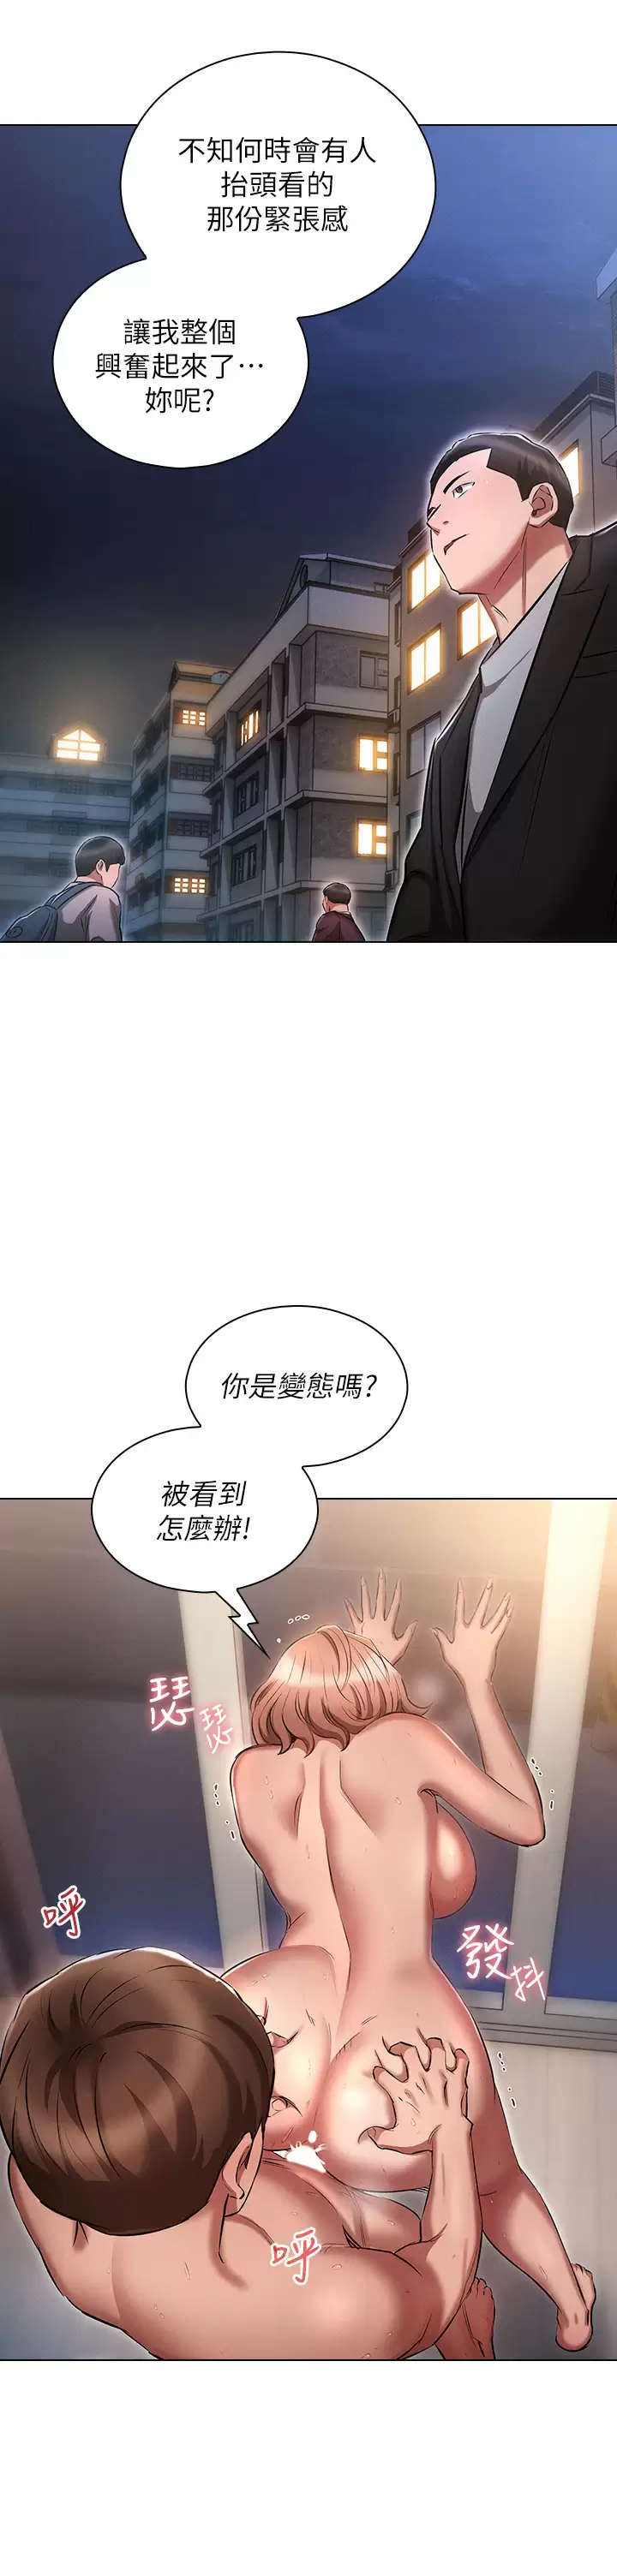 韩国污漫画 魯蛇的多重宇宙 第14话 挑战窗边暴露性爱! 33